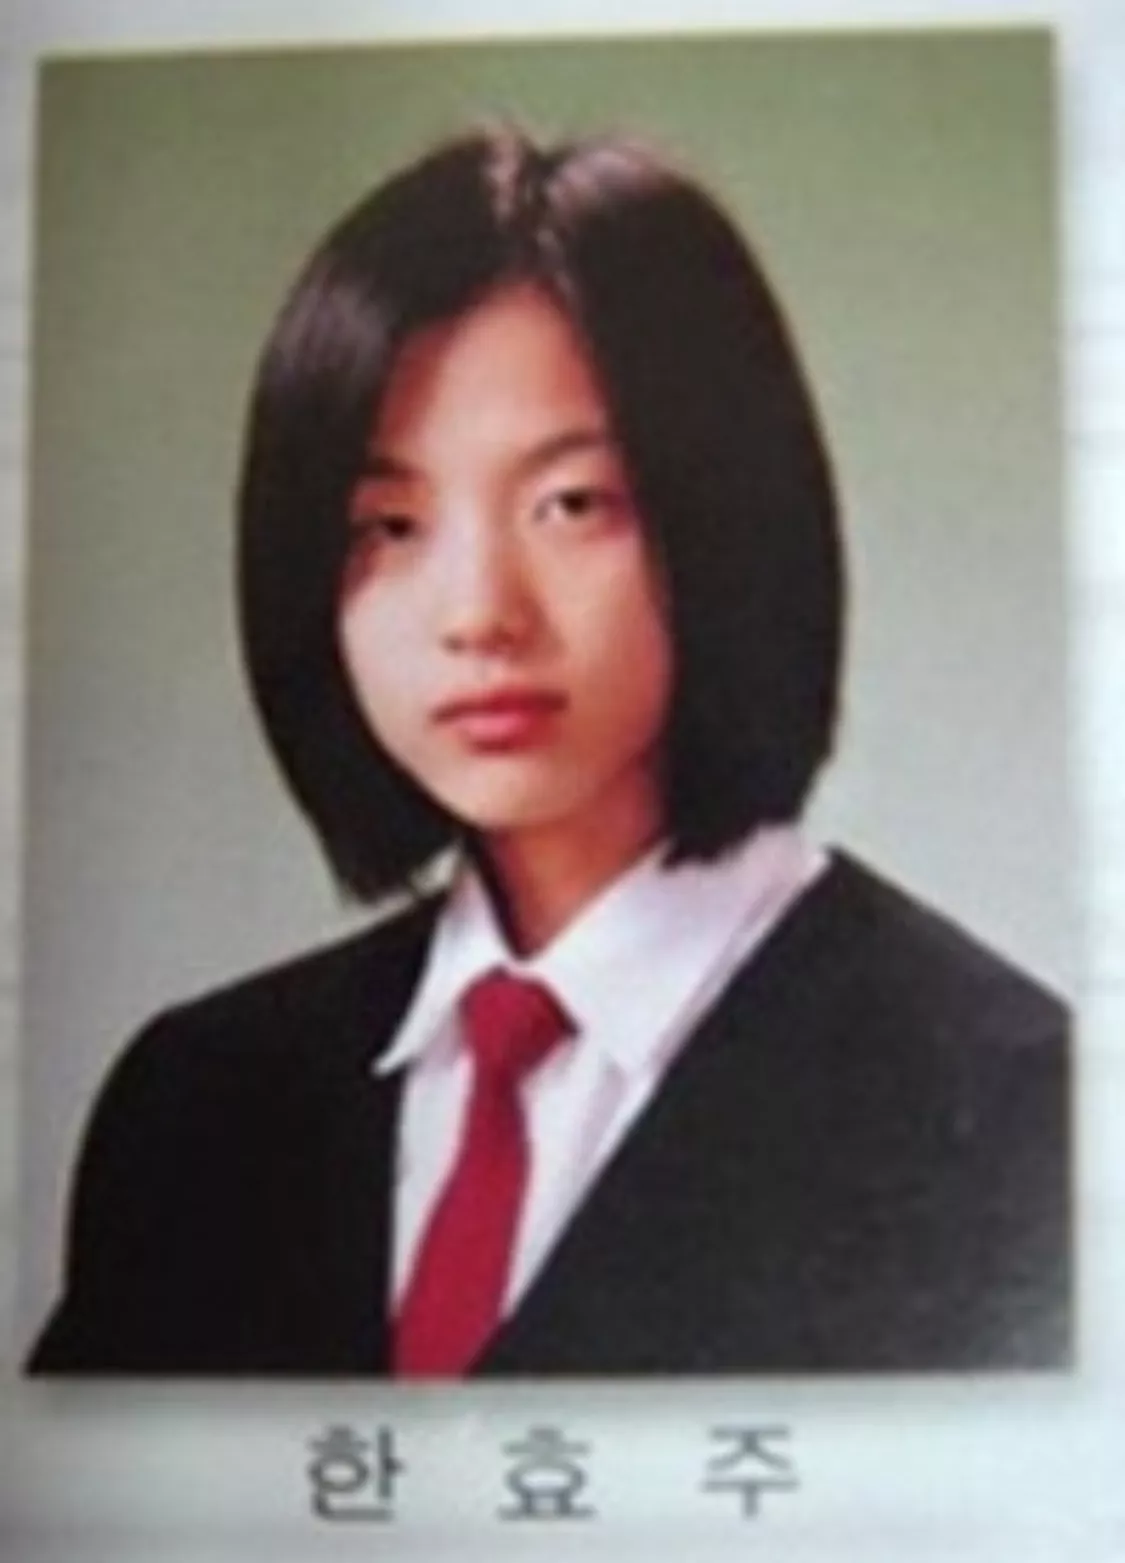 Посмотрите, как самые популярные корейские актрисы изменились со школьных времен